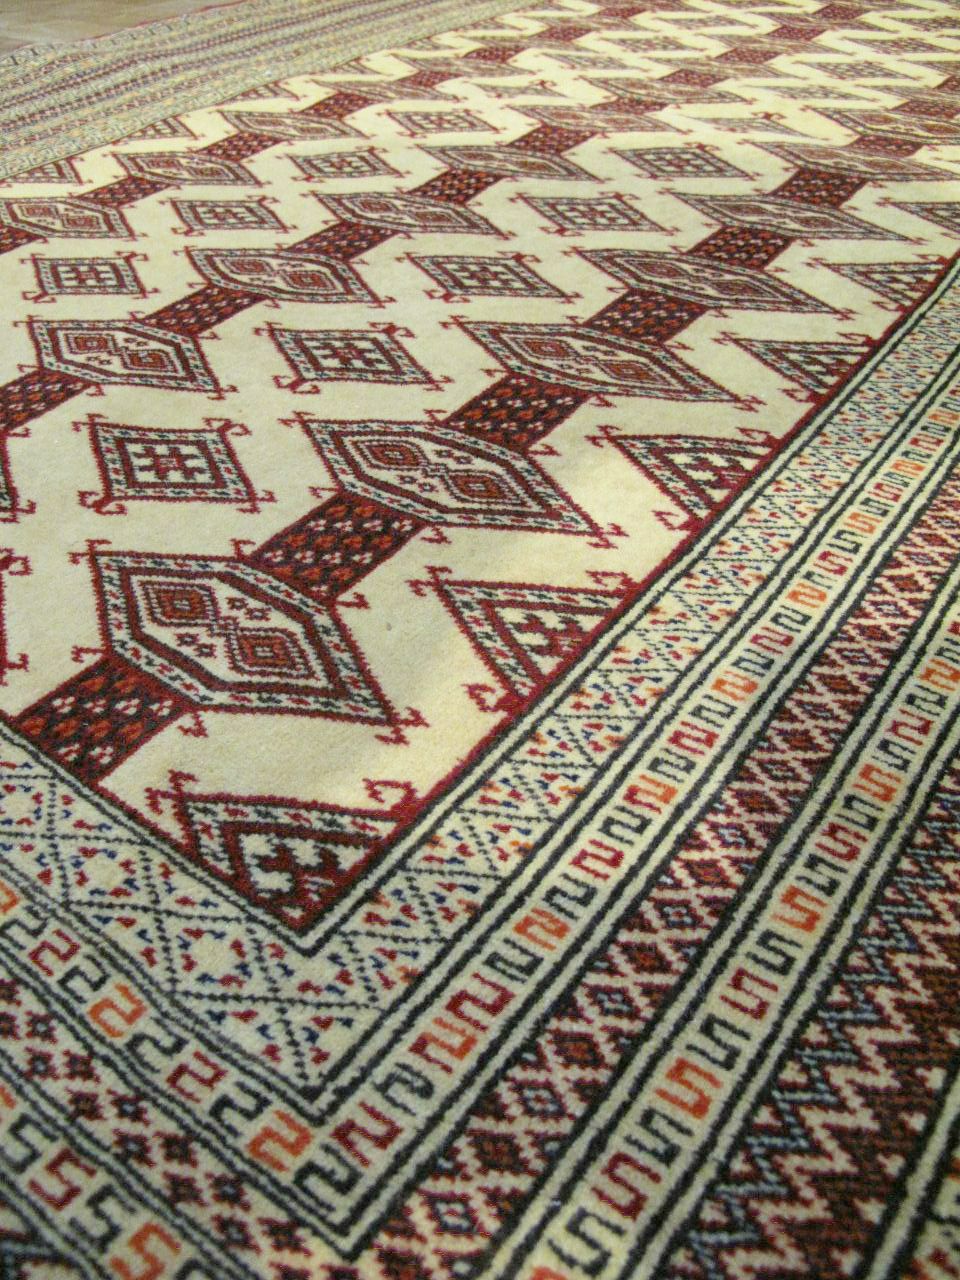 فرش دستباف ترکمن طرح بازوبندي سایز قاليچه رنگ زمینه كرم رنگ حاشیه كرم کد ۴۱۵۰۹ سایز ۱٫۸۷ X 1.37